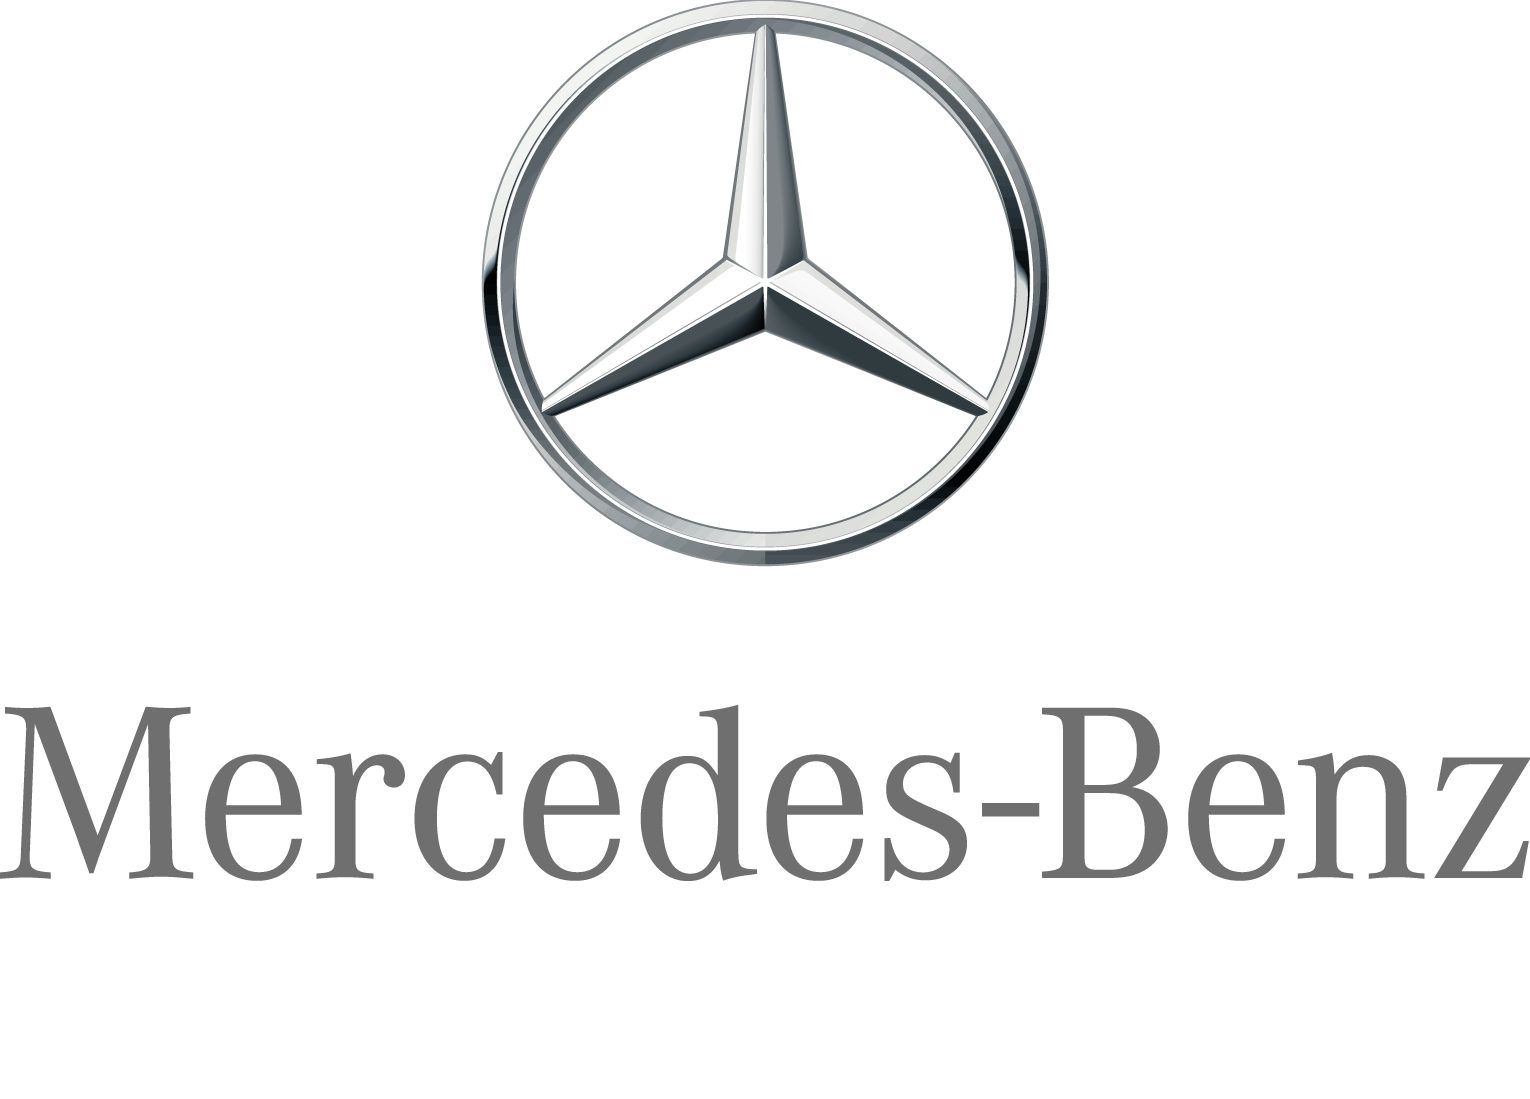 Mercedes-Benz Logo Image PNG Image